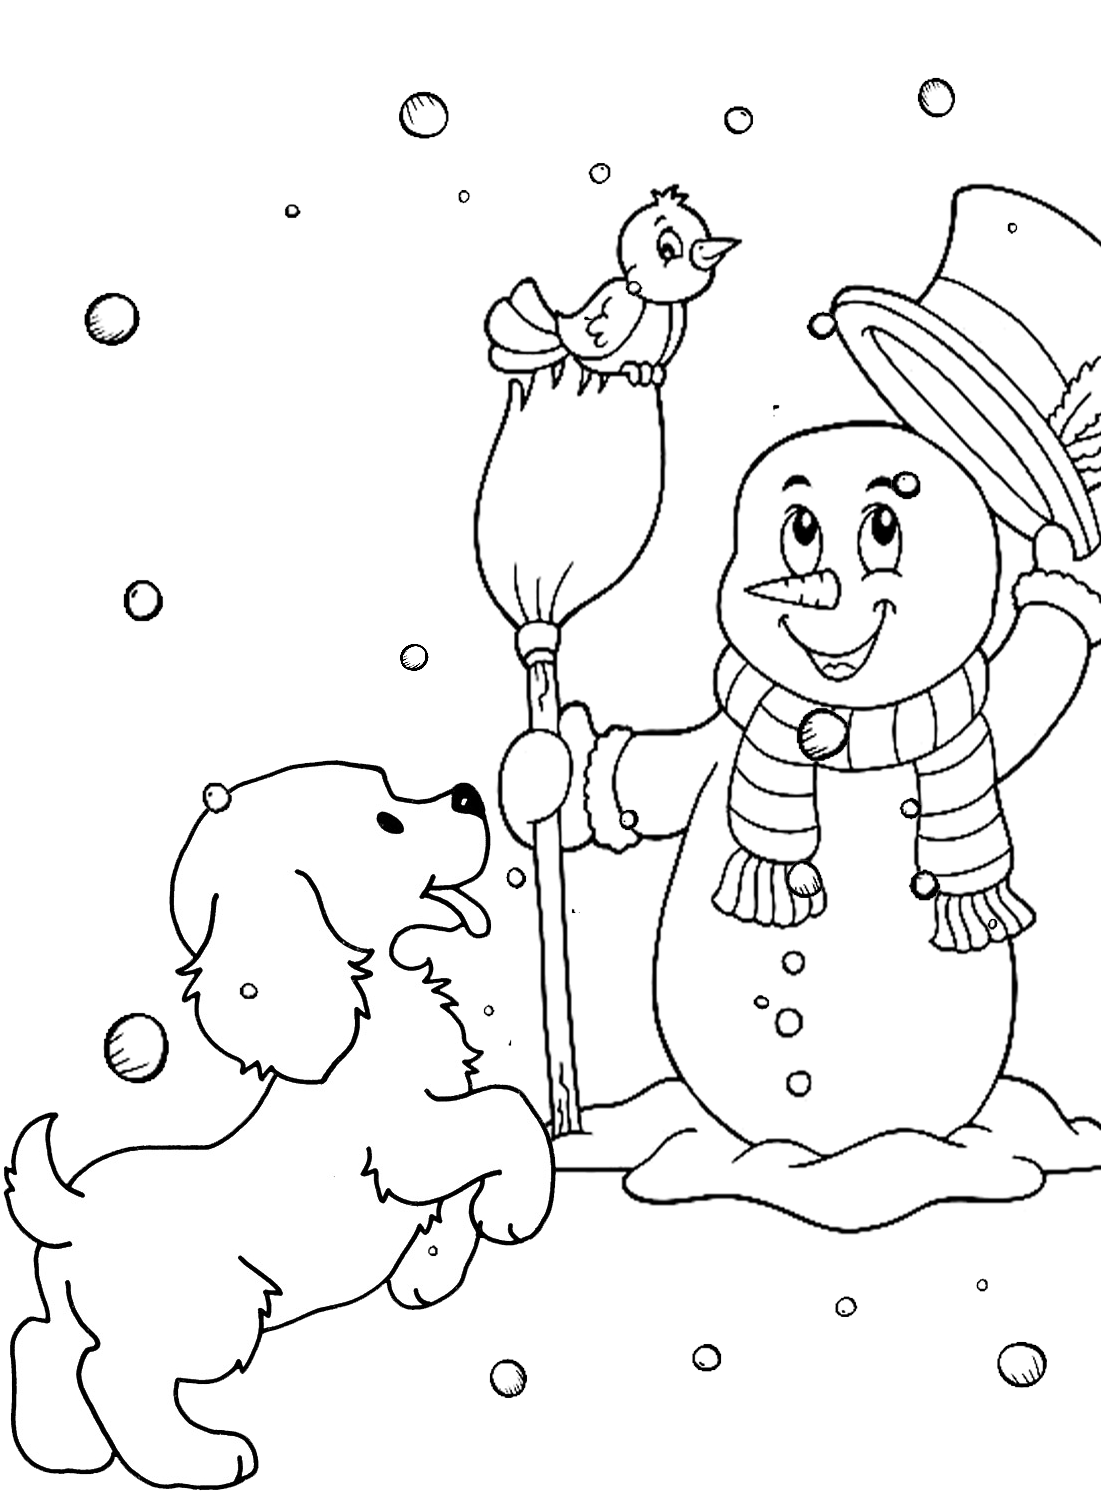 Página para colorear de muñeco de nieve y cachorro